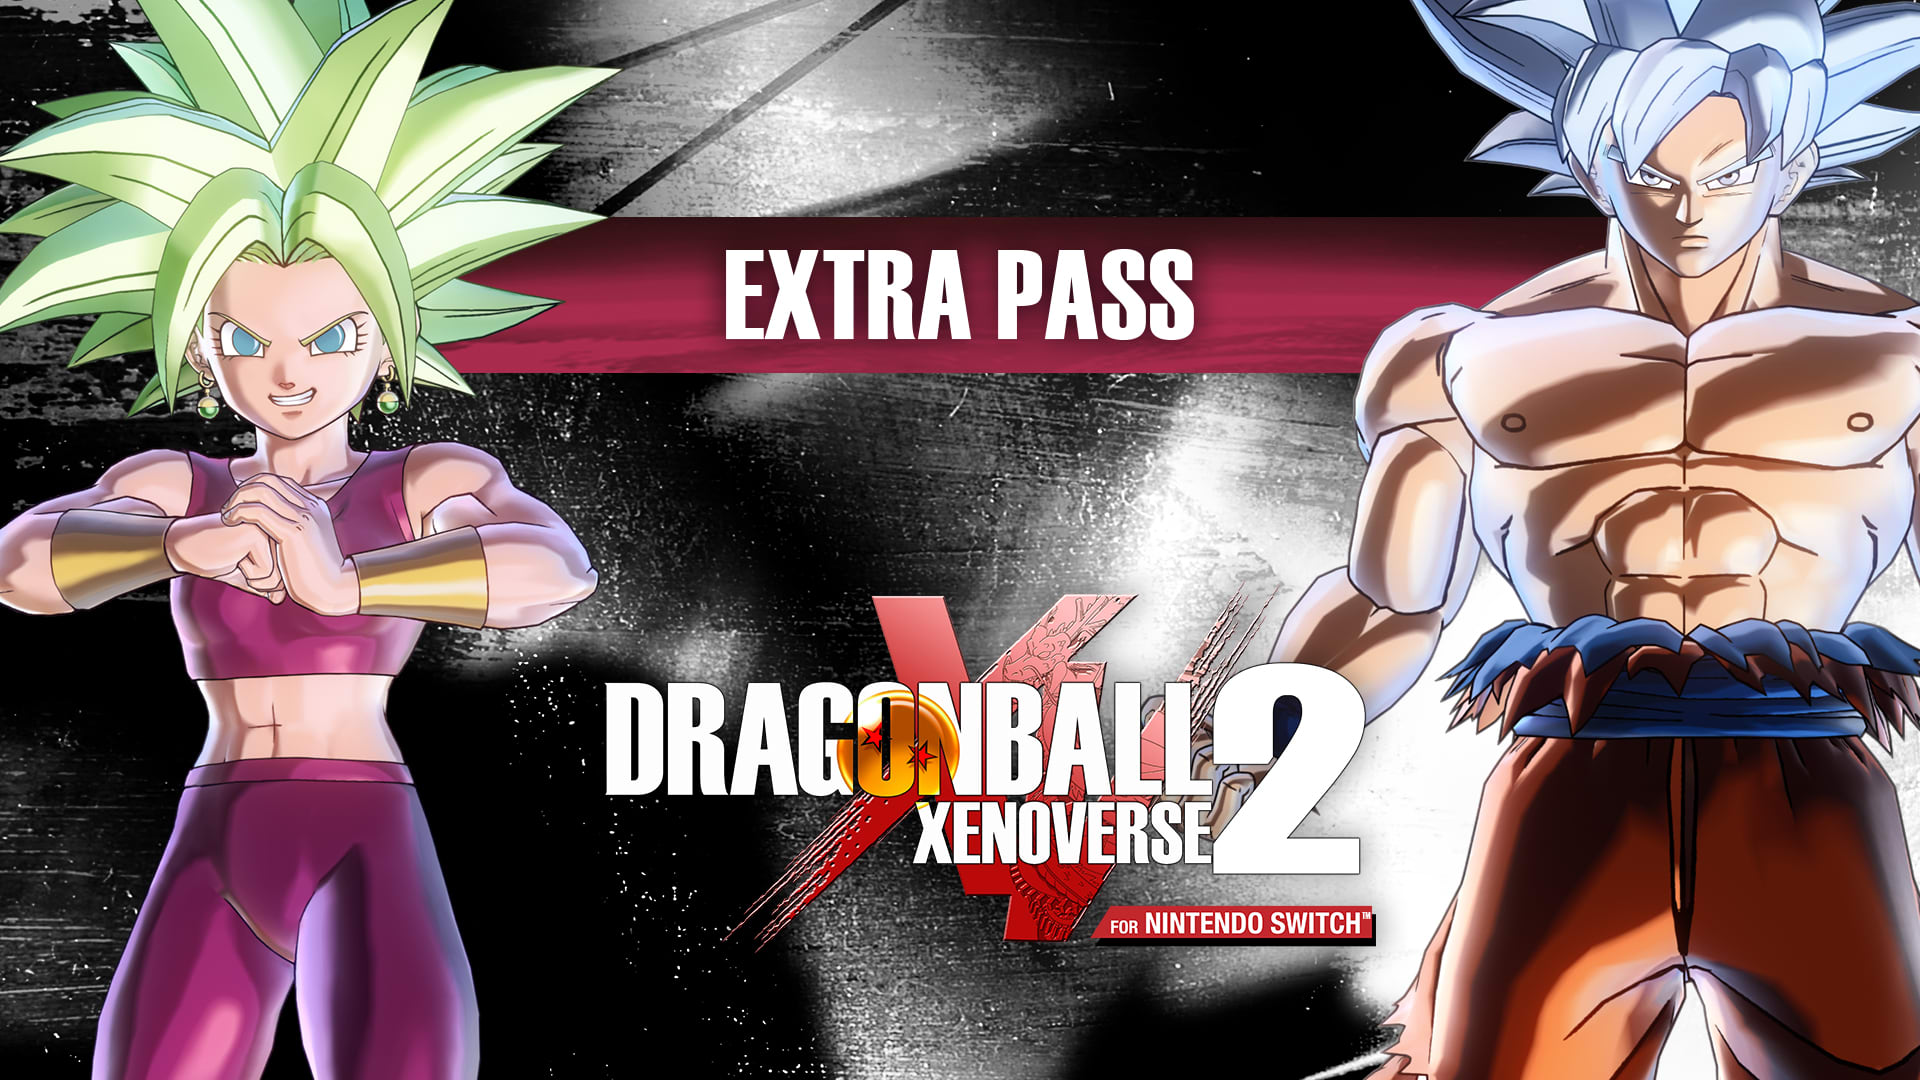 DRAGON BALL XENOVERSE 2: Extra Pass